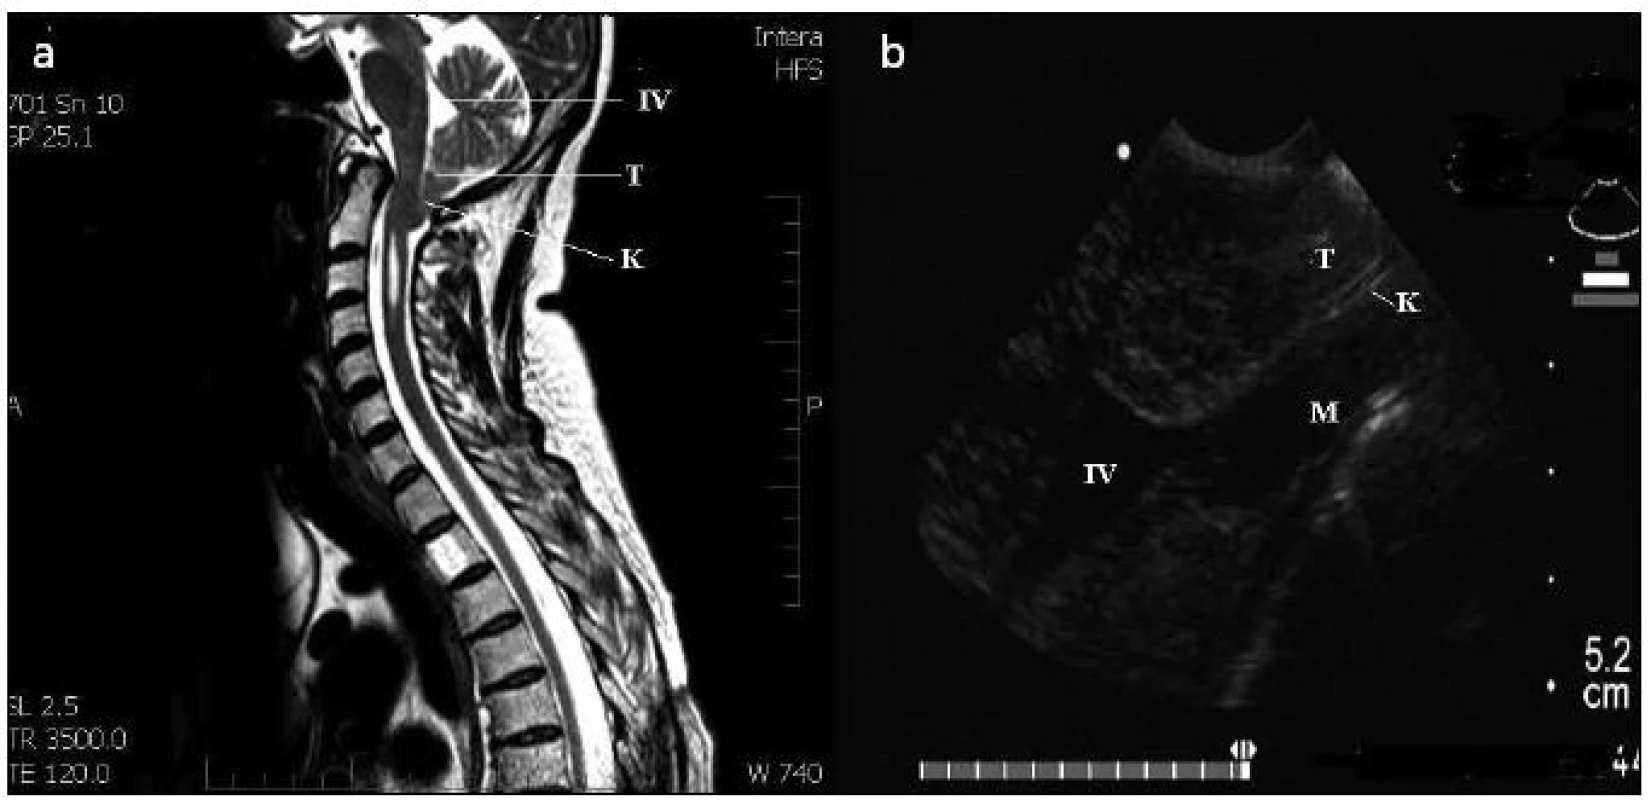 Chiariho malformace I typ A – předoperační MR T2, sagitální řez (1a) a peroperační ultrazvukové vyšetření v B obraze (1b).
T: mozečkové tonzily; M: mícha; IV: 4. komora; K: místo komprese